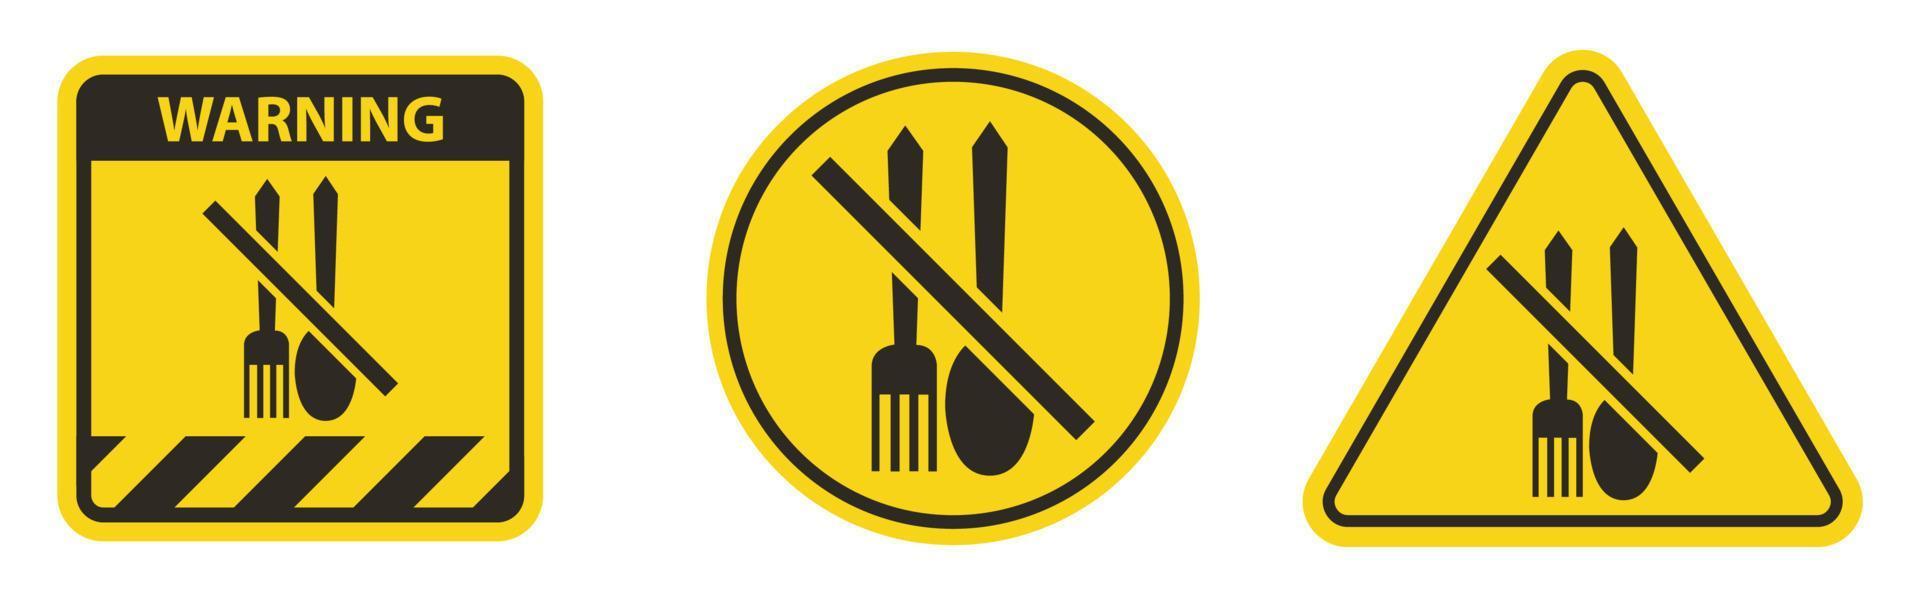 geen voedsel toegestaan symbool op witte achtergrond vector